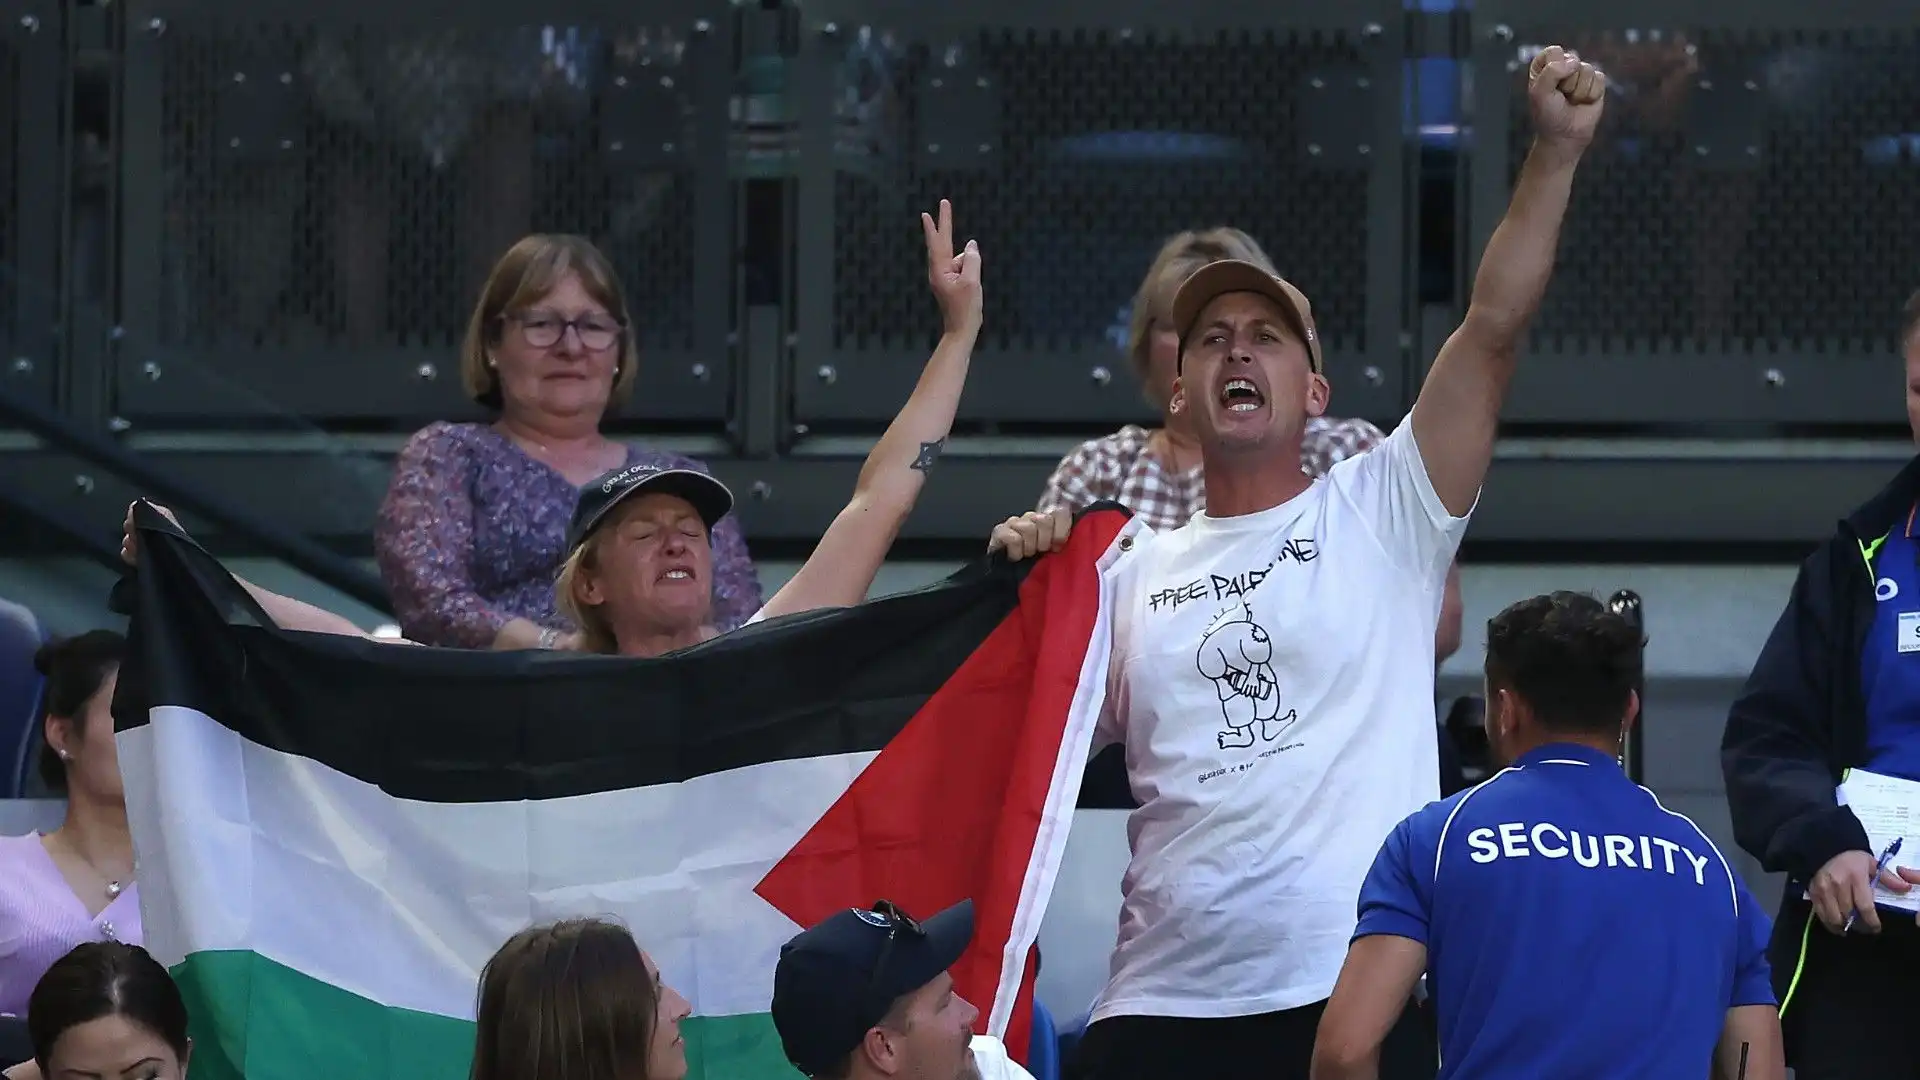 Le due persone tengono in mano una bandiera palestinese